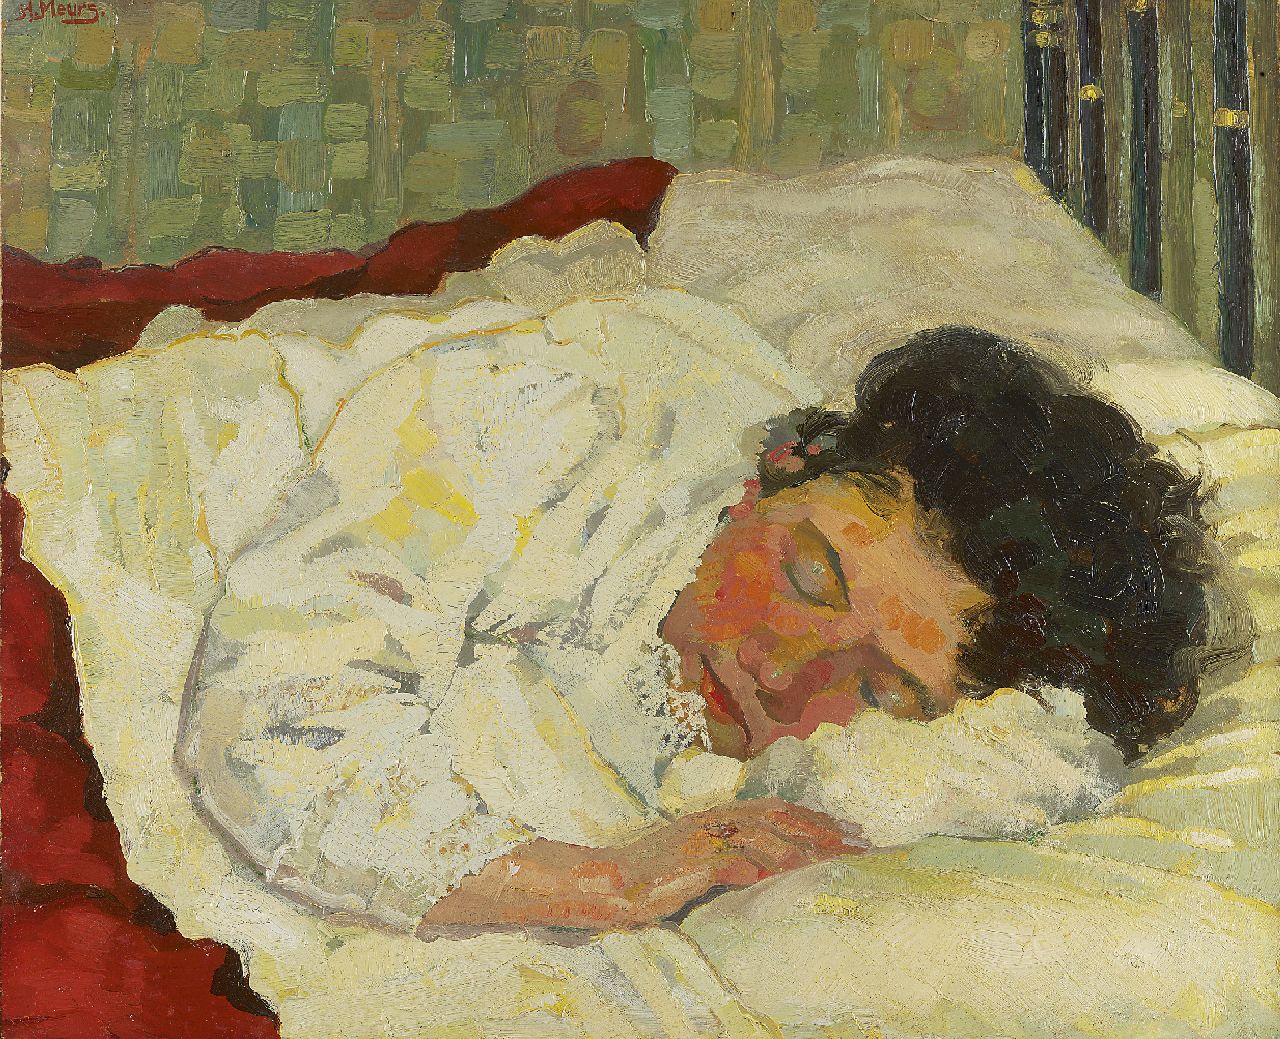 Meurs H.H.  | 'Harmen' Hermanus Meurs, Schlafende Frau, Öl auf Pappe 56,3 x 68,0 cm, Unterzeichnet l.o. und zu datieren um 1923